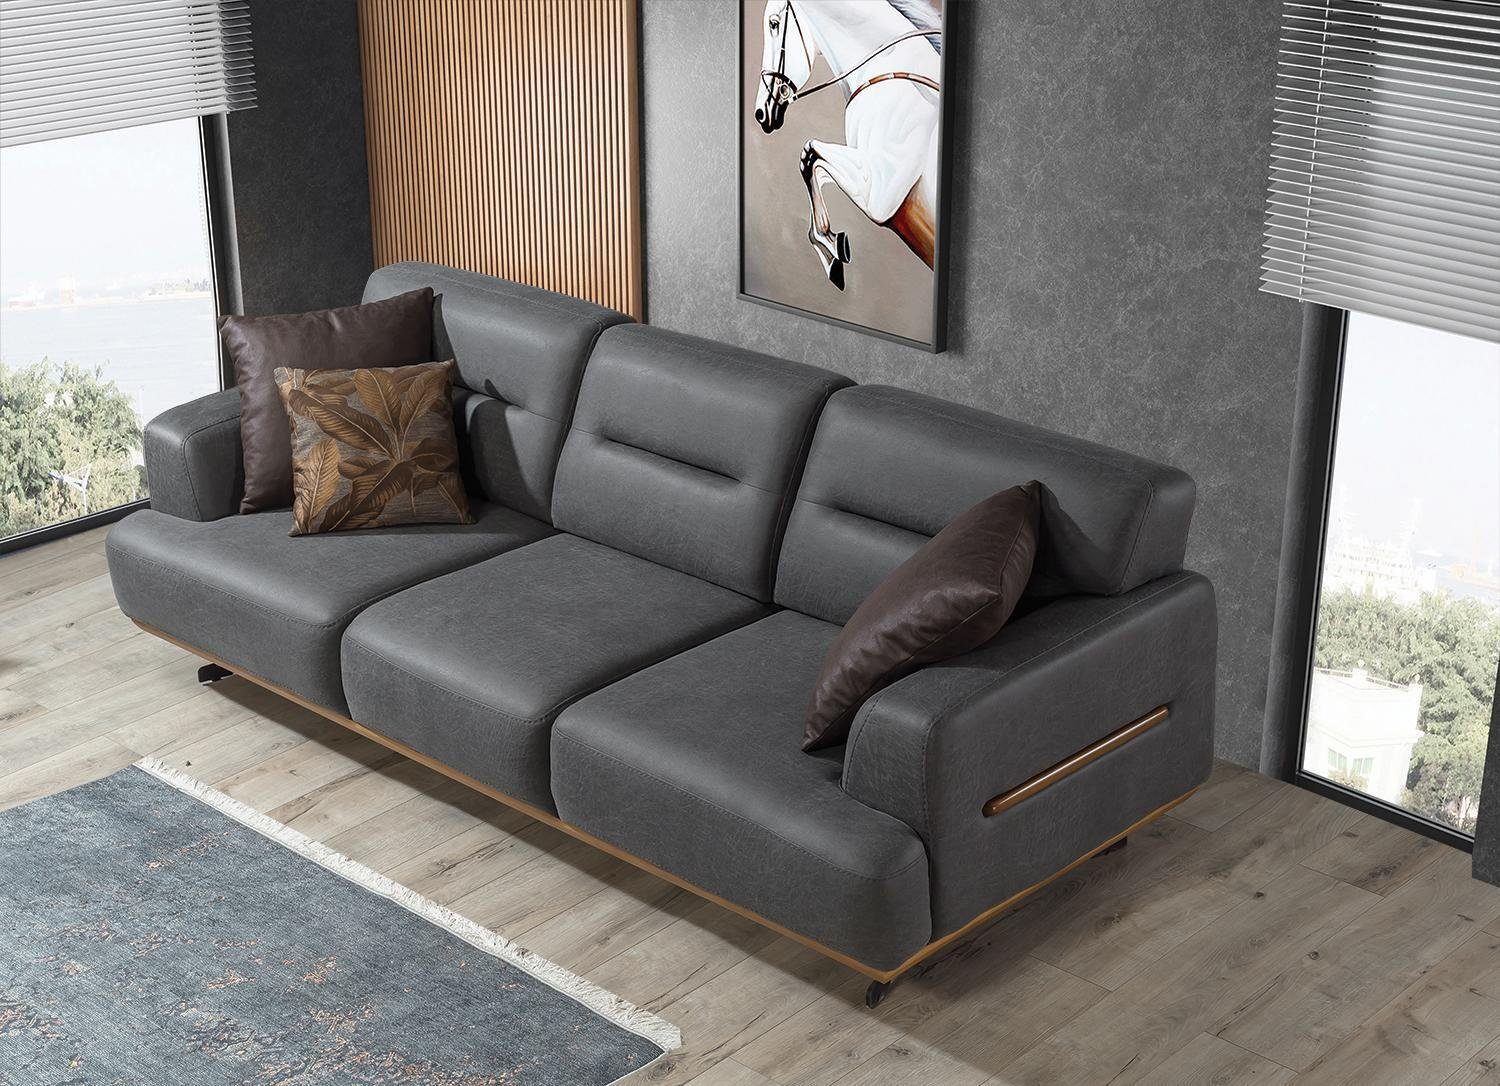 JVmoebel Möbel Sofa Europa Polster Wohnzimmer Sofa in Luxus Teile, Made Grau Couch Designer, Dreisitzer 1